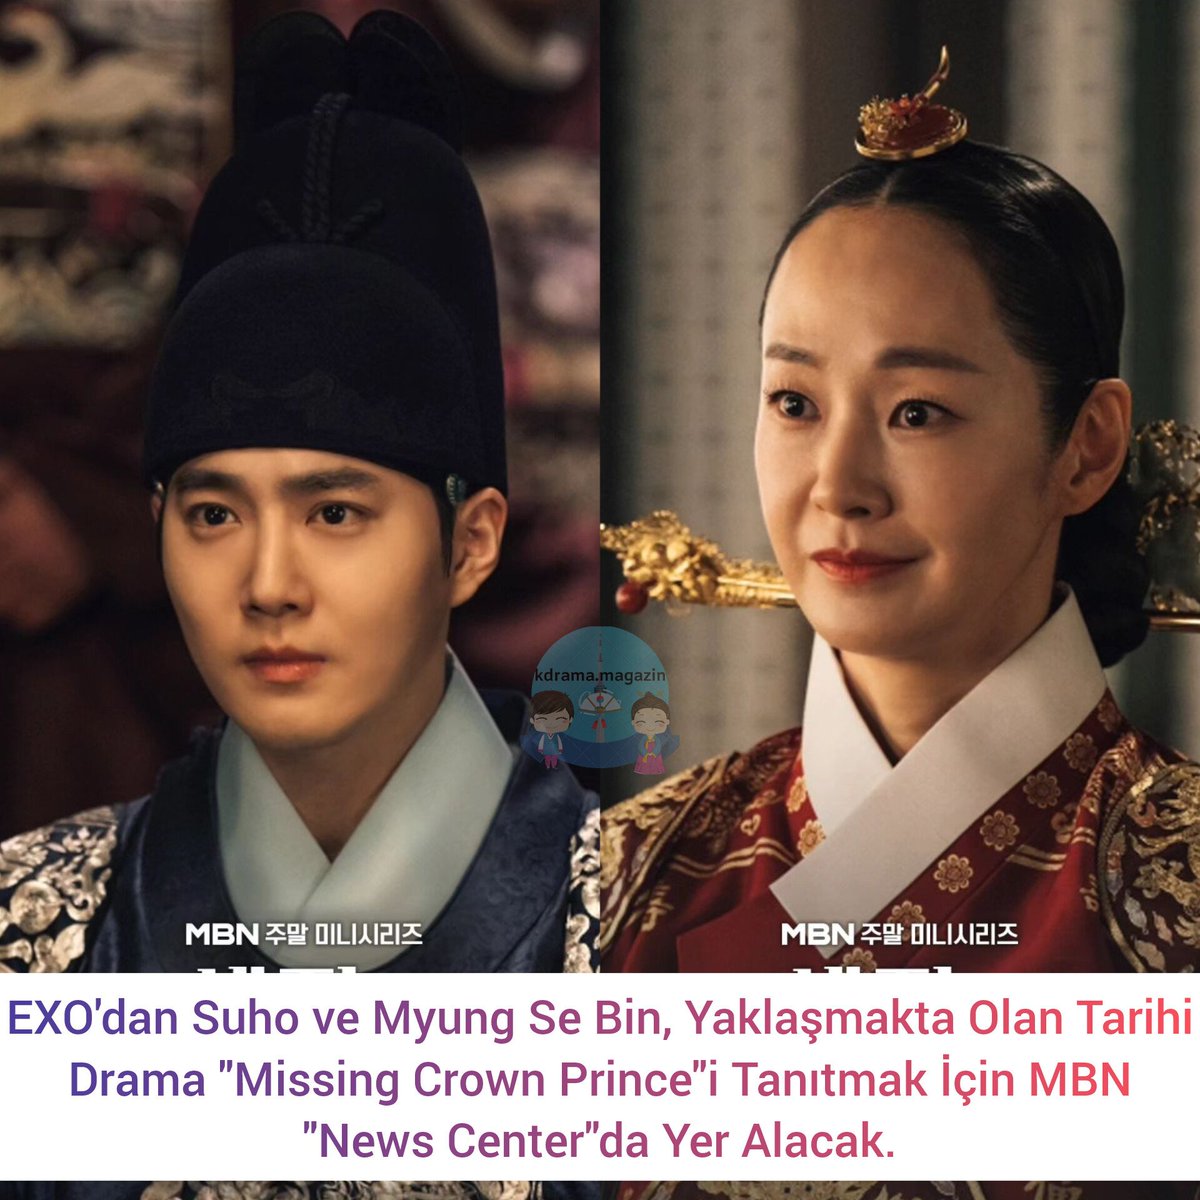 #EXO'dan #Suho ve #MyungSeBin, Yaklaşmakta Olan Tarihi Drama #MissingCrownPrince'i Tanıtmak İçin MBN 'News Center'da Yer Alacak. 

Röportaj 13 Nisan'da yayınlanacak ve ardından dizinin galası yapılacak.